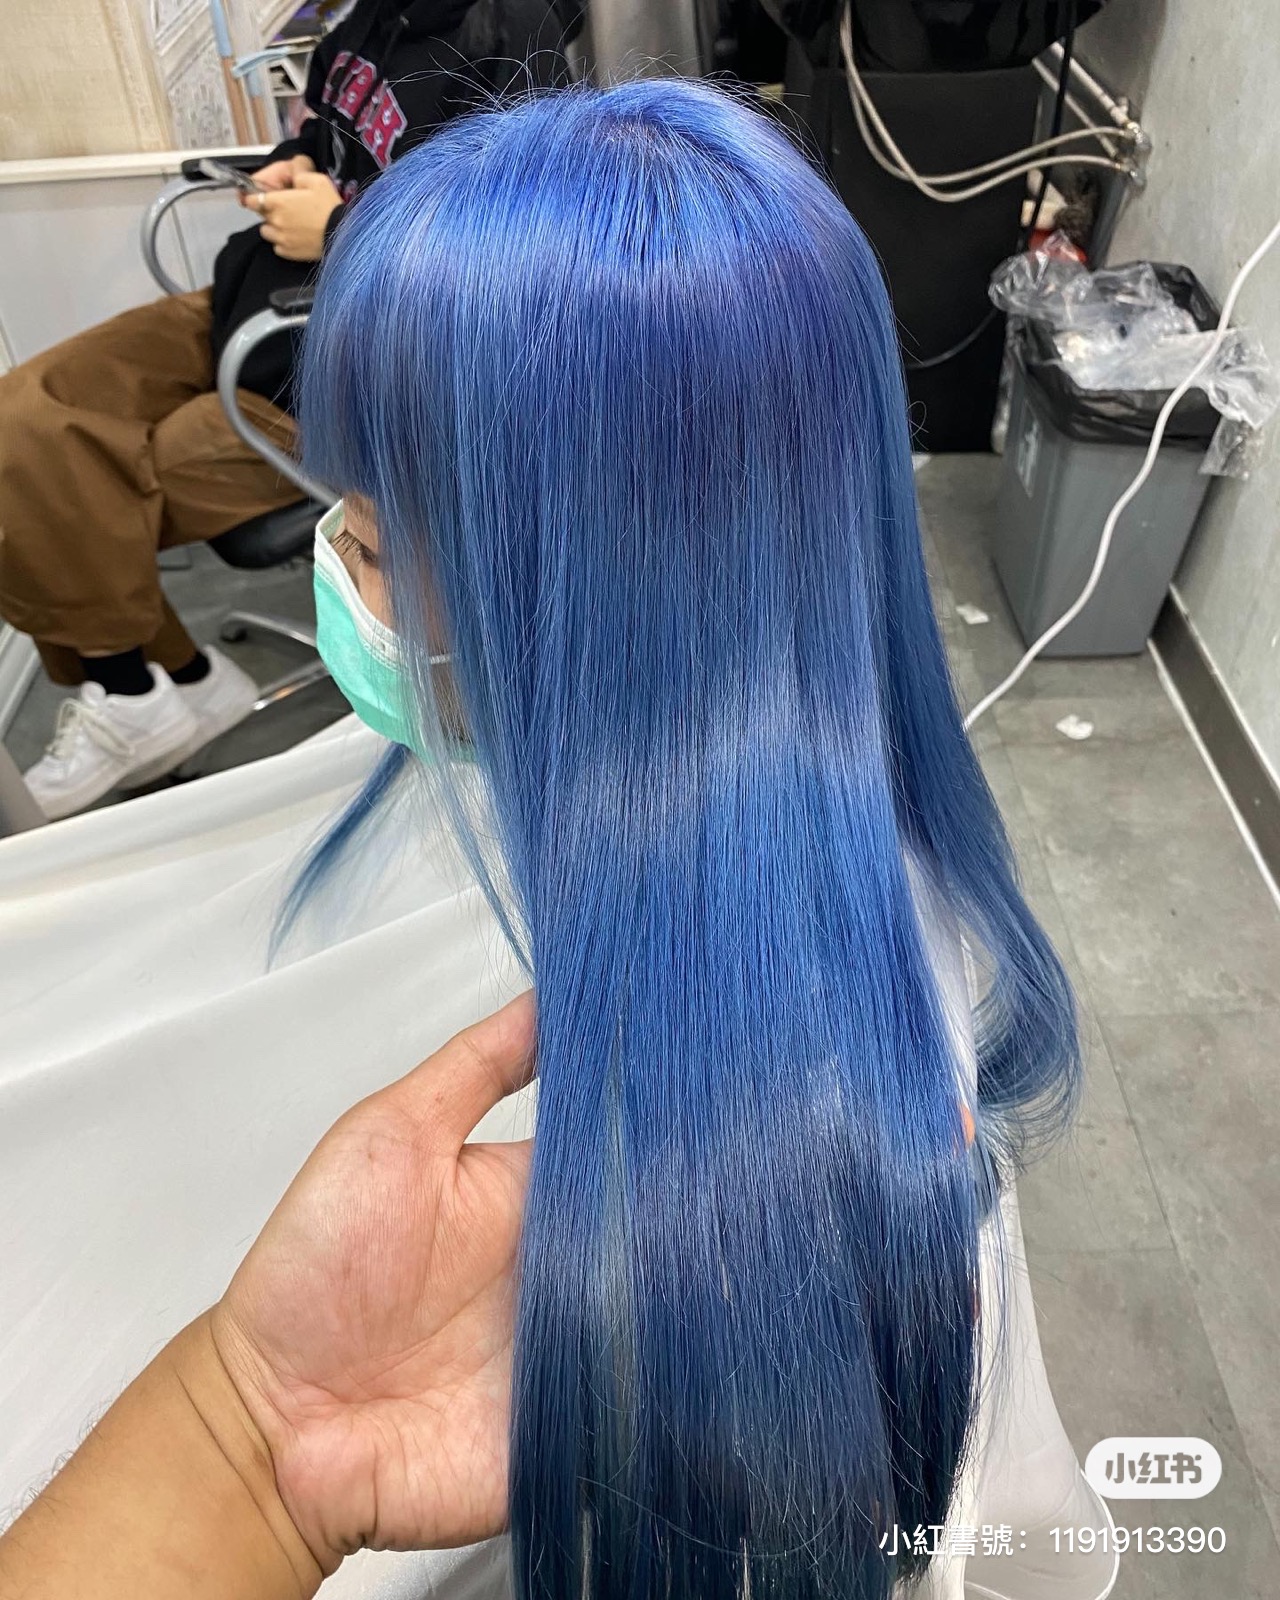 髮型作品參考:藍